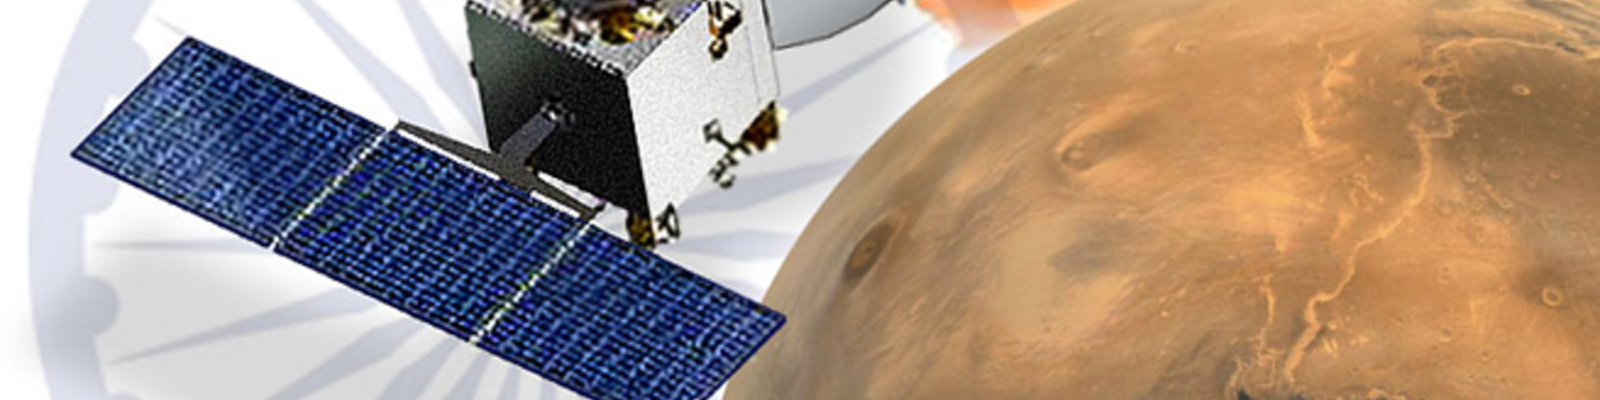 Sonde indienne MOM en orbite autour de Mars